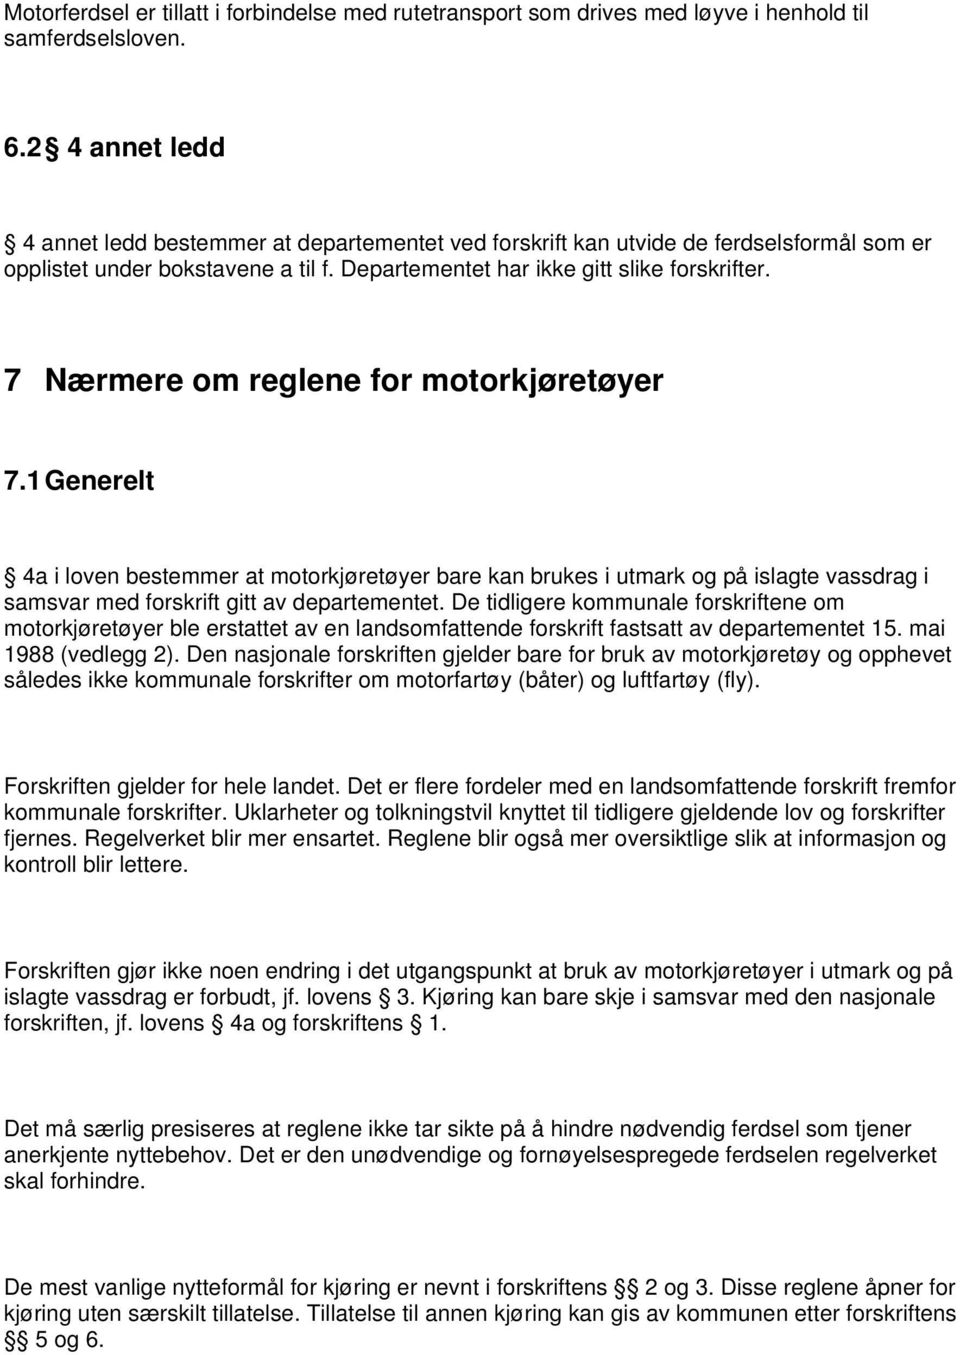 7 Nærmere om reglene for motorkjøretøyer 7.1 Generelt 4a i loven bestemmer at motorkjøretøyer bare kan brukes i utmark og på islagte vassdrag i samsvar med forskrift gitt av departementet.